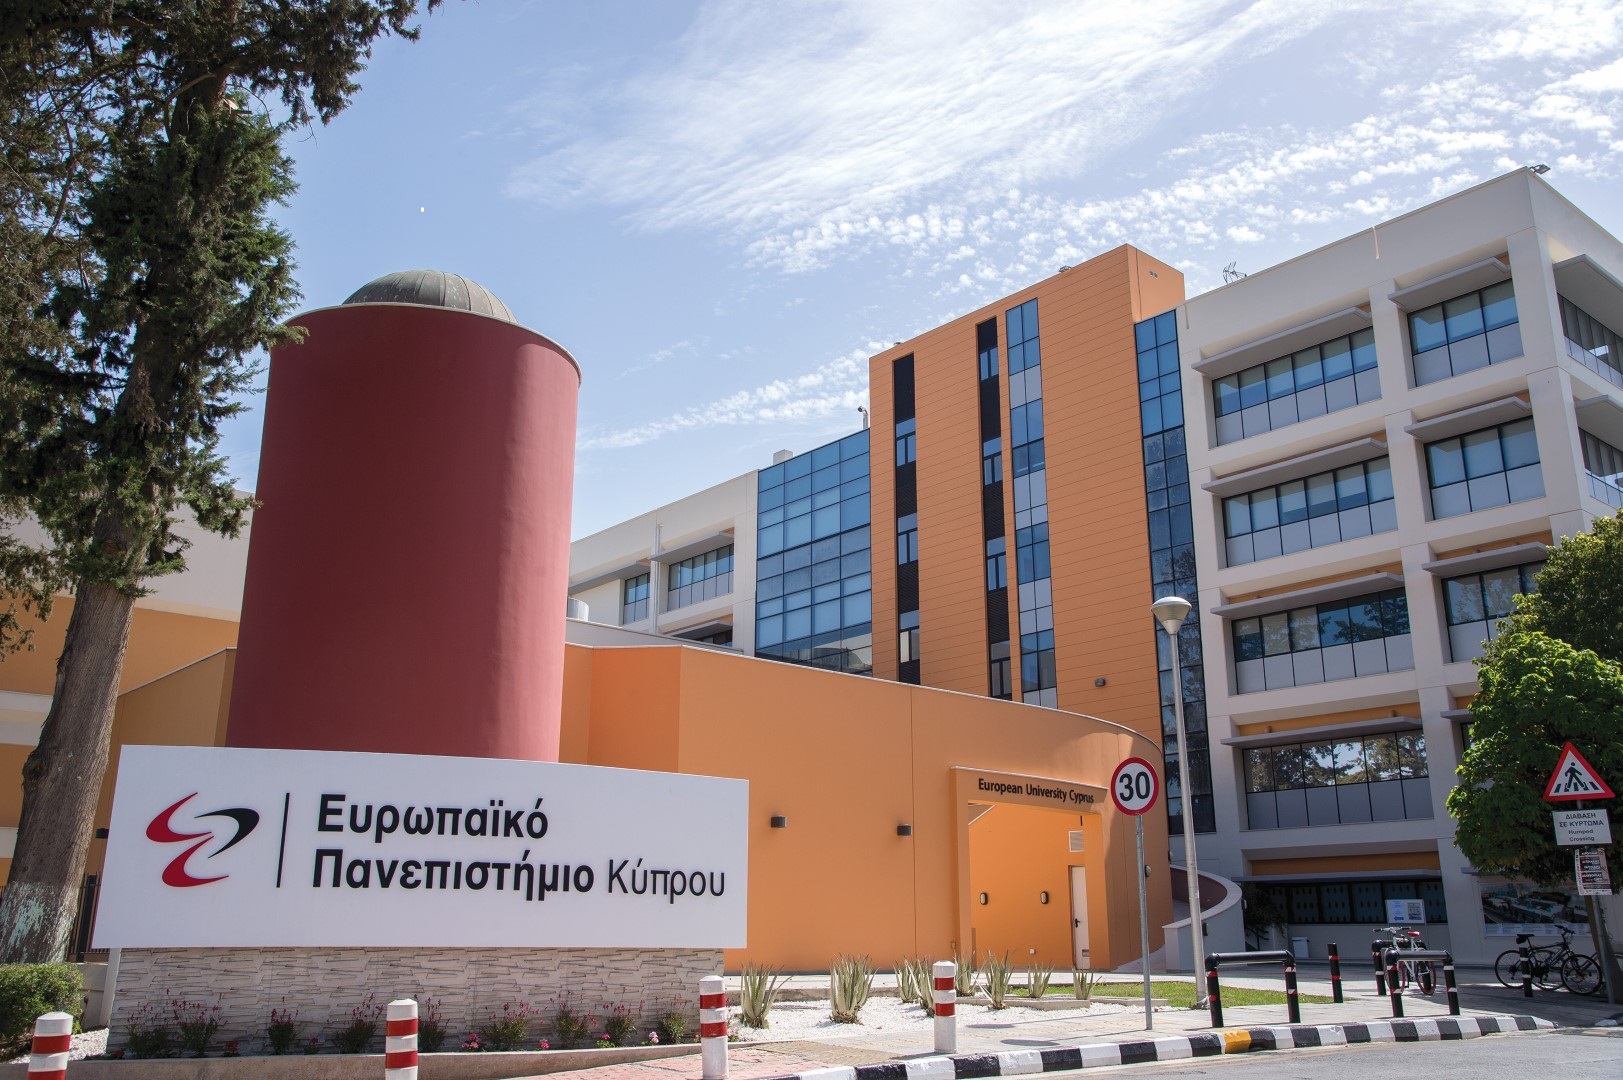 Ορθοδοντική εξέταση παιδιών 7-9 ετών στην οδοντιατρική κλινική του Ευρωπαϊκού Πανεπιστημίου Κύπρου